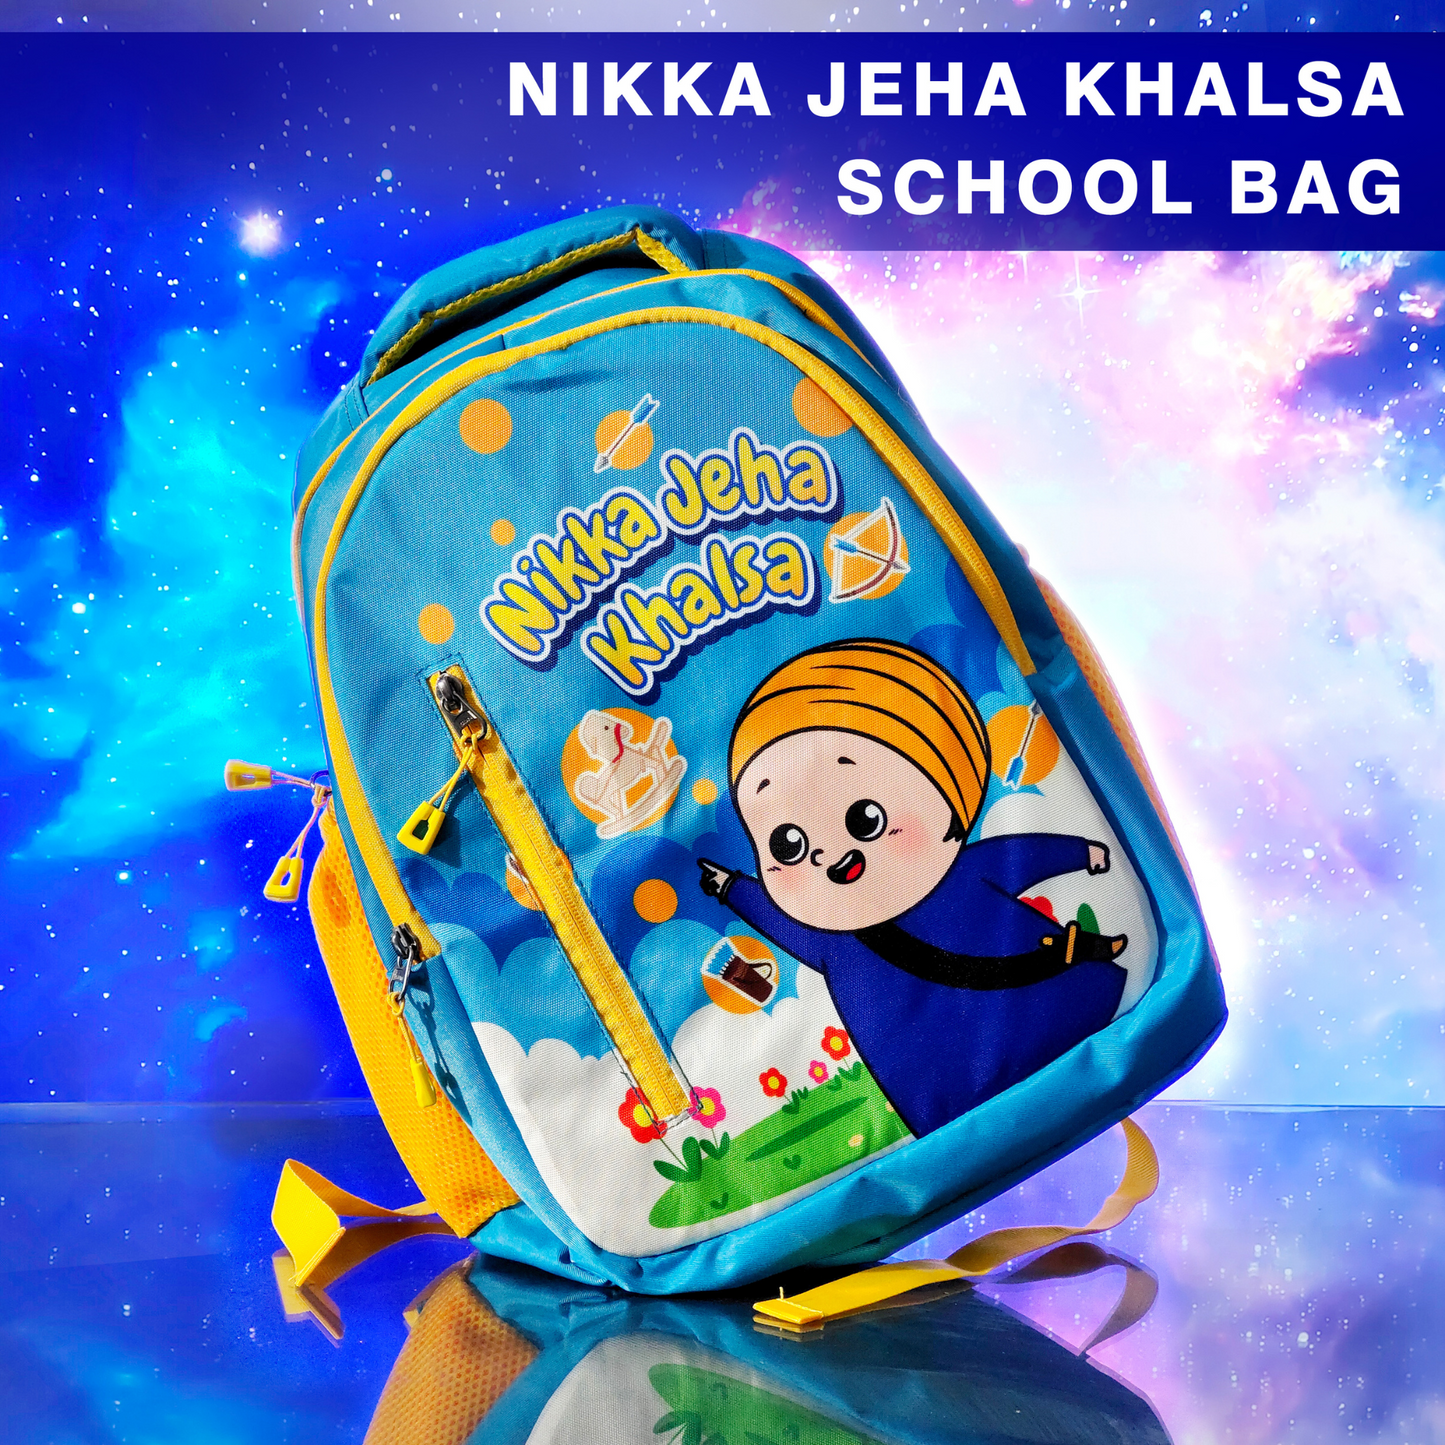 Nikka Jeha Khalsa Bag